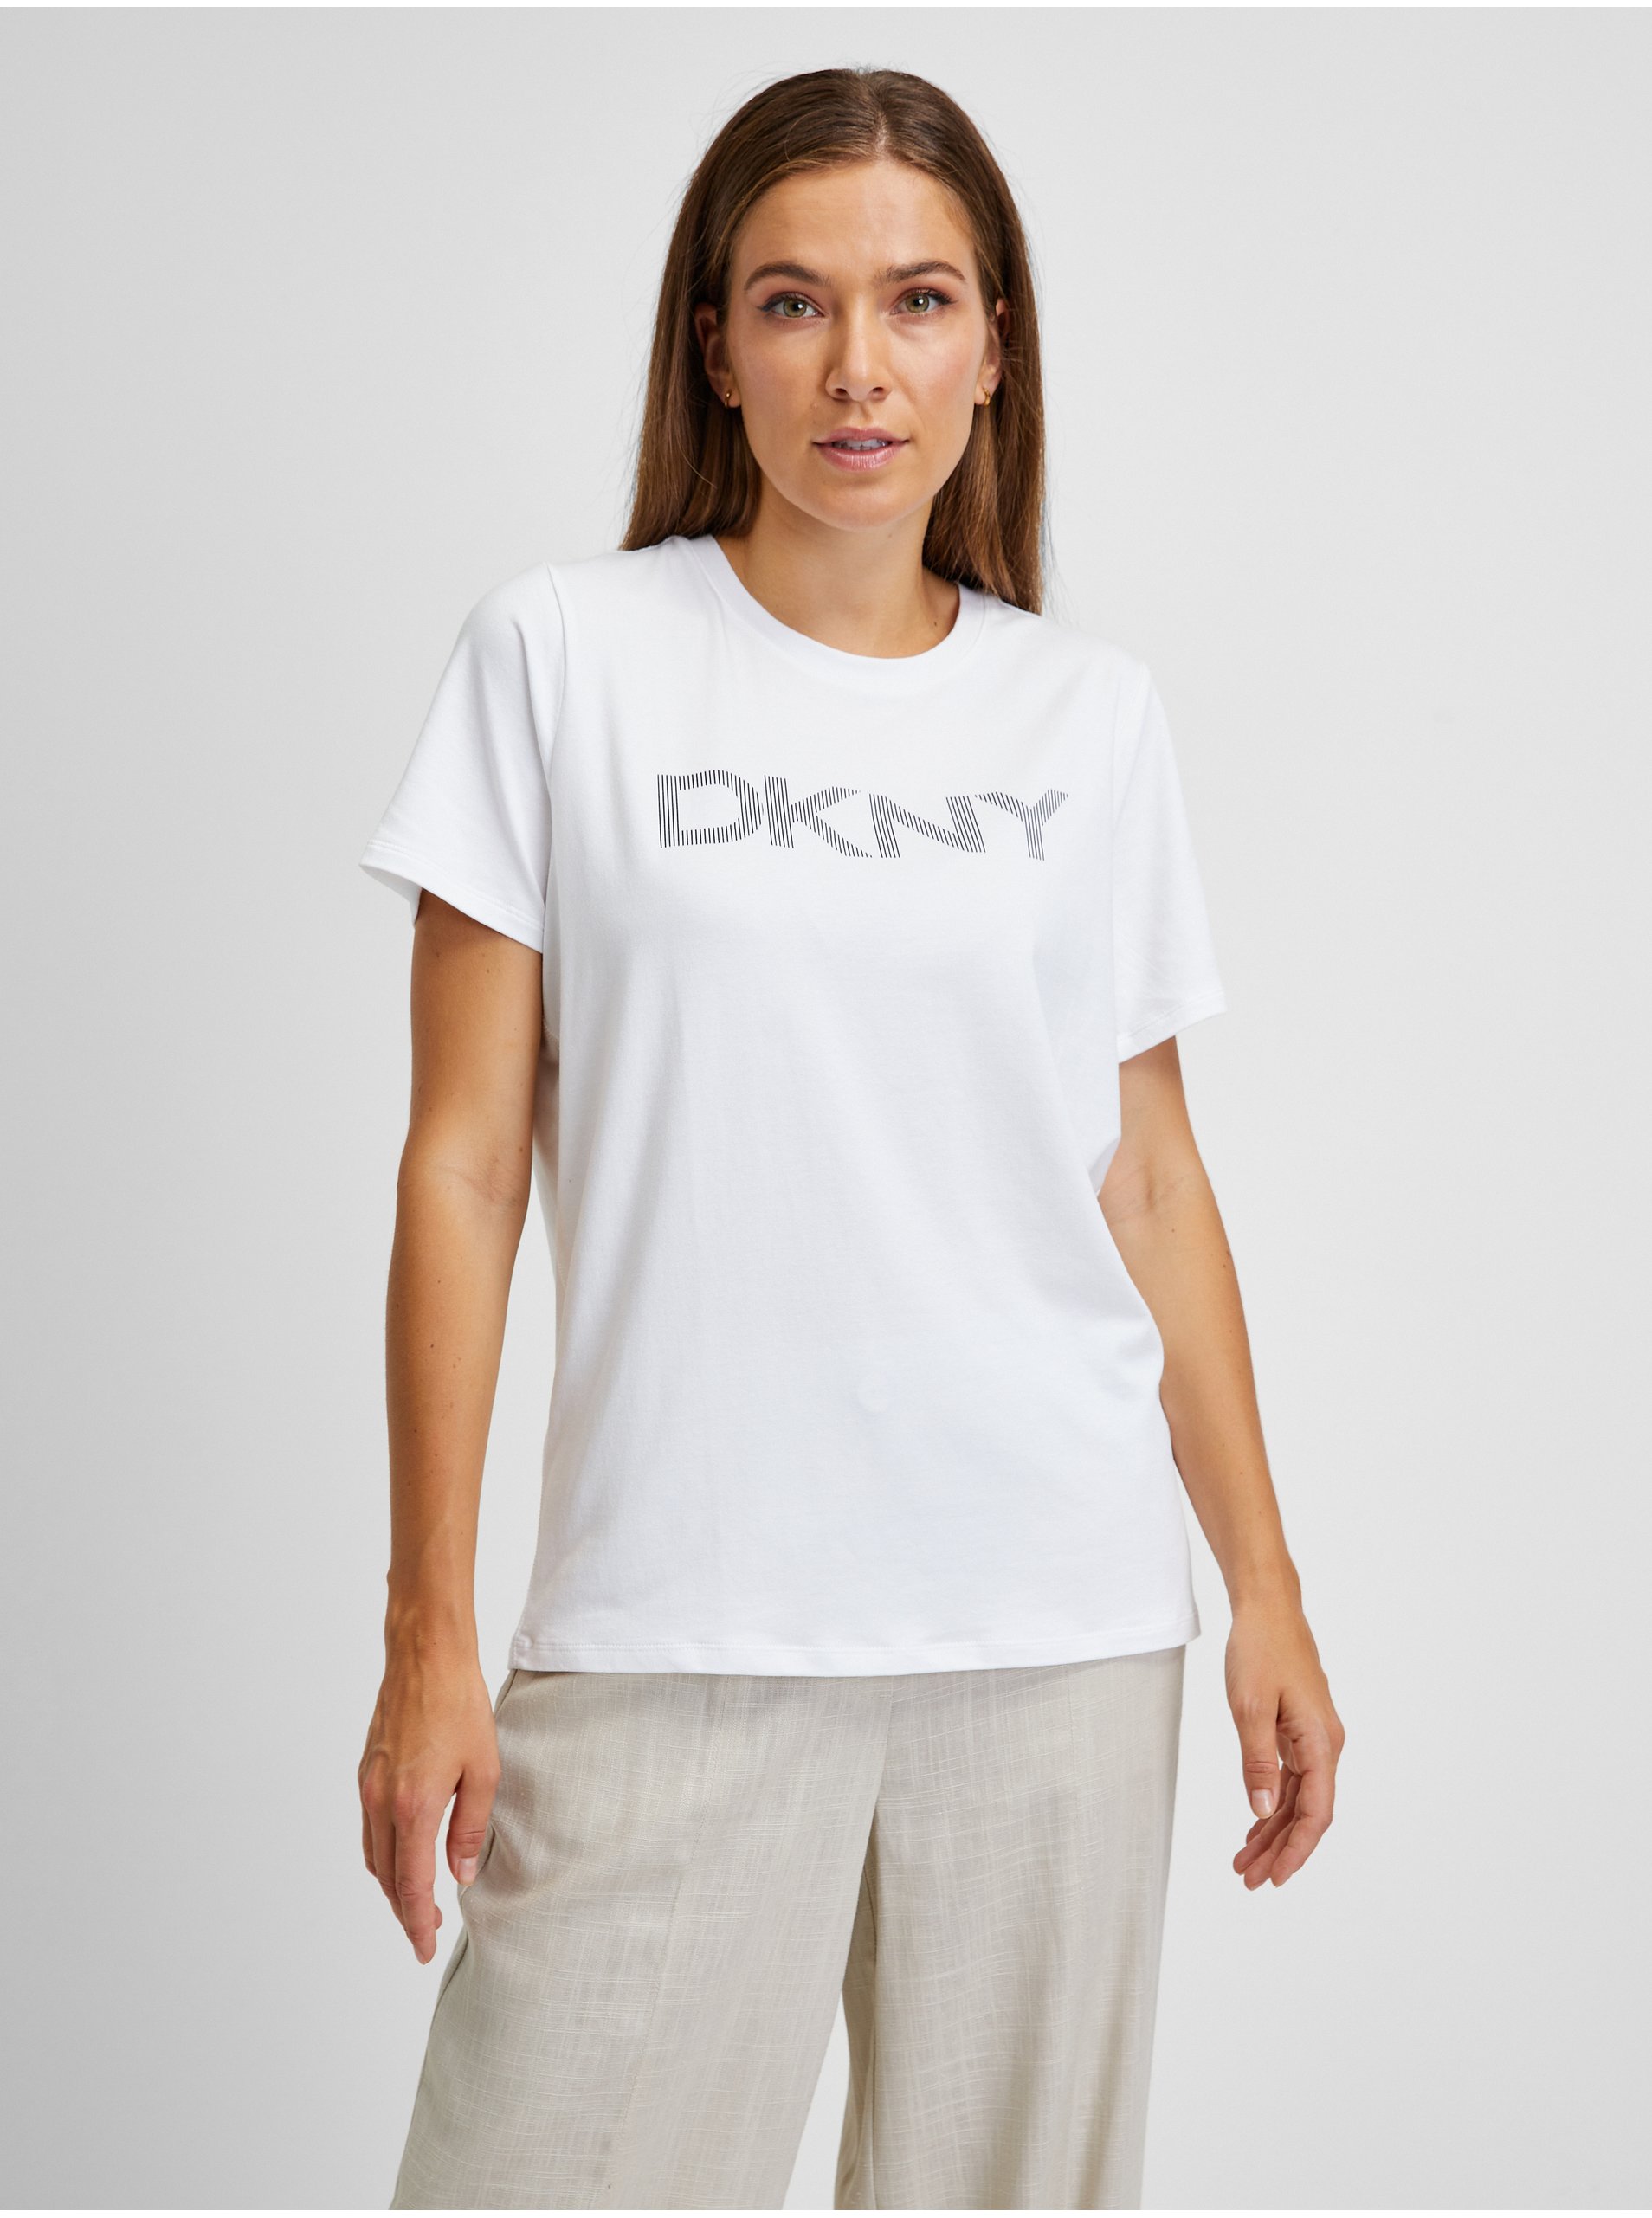 Lacno Biele dámske tričko DKNY